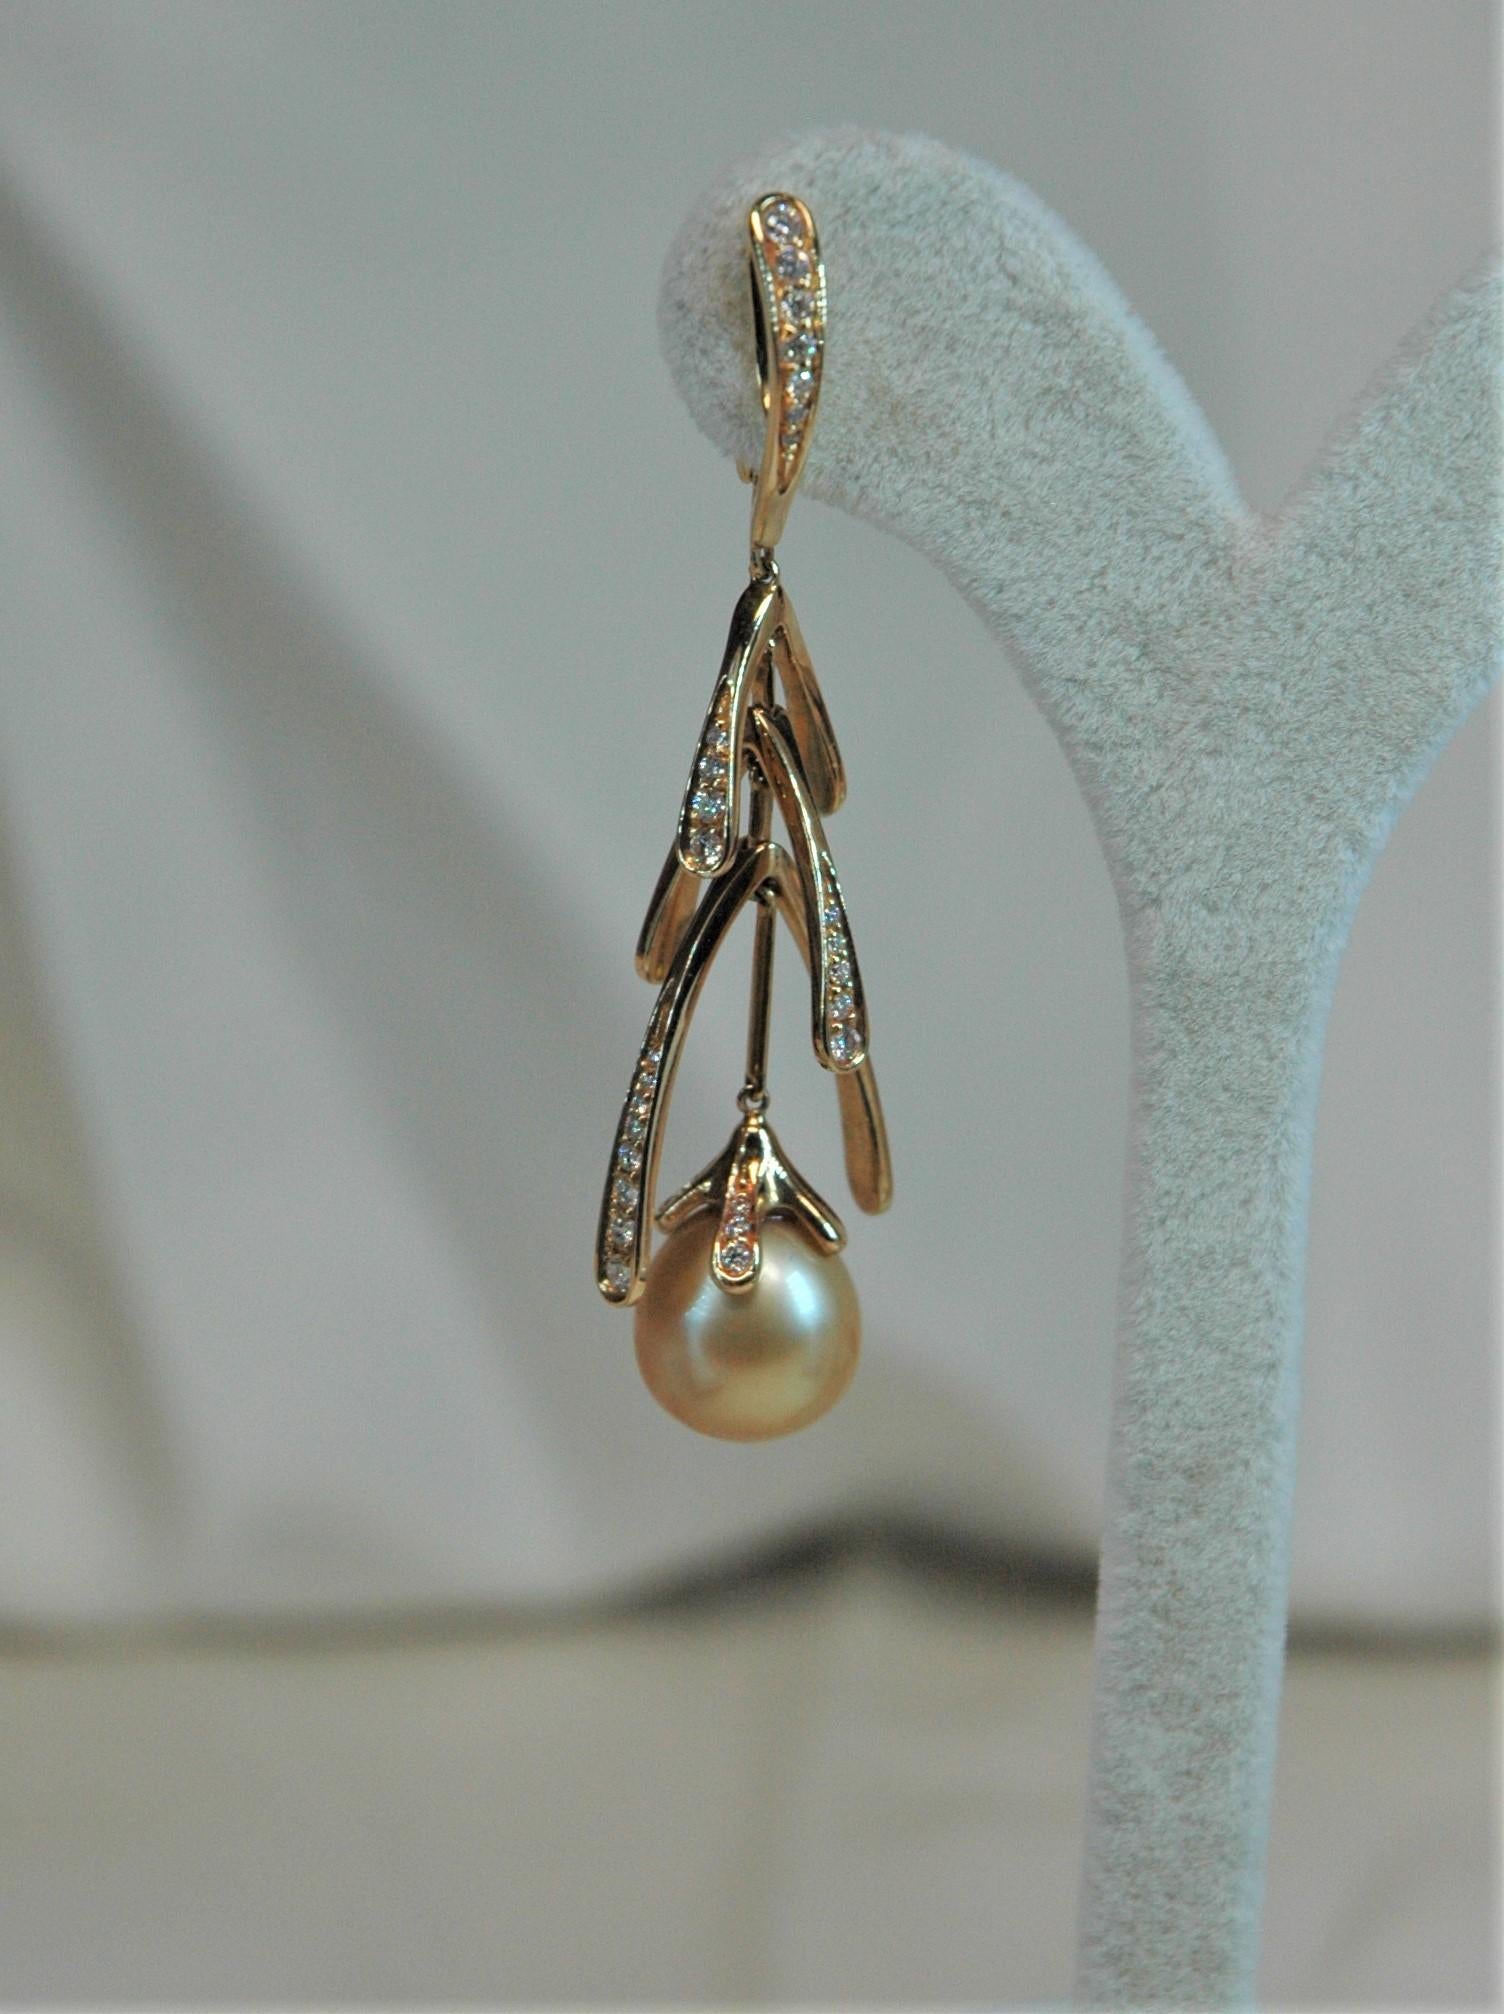 Ces merveilleuses boucles d'oreilles sont réalisées en or jaune avec des diamants et des perles dorées. Ils sont complètement mobiles dans leur longueur, ce qui leur donne une légèreté de mouvement appréciable. Il existe également la bague parfaite